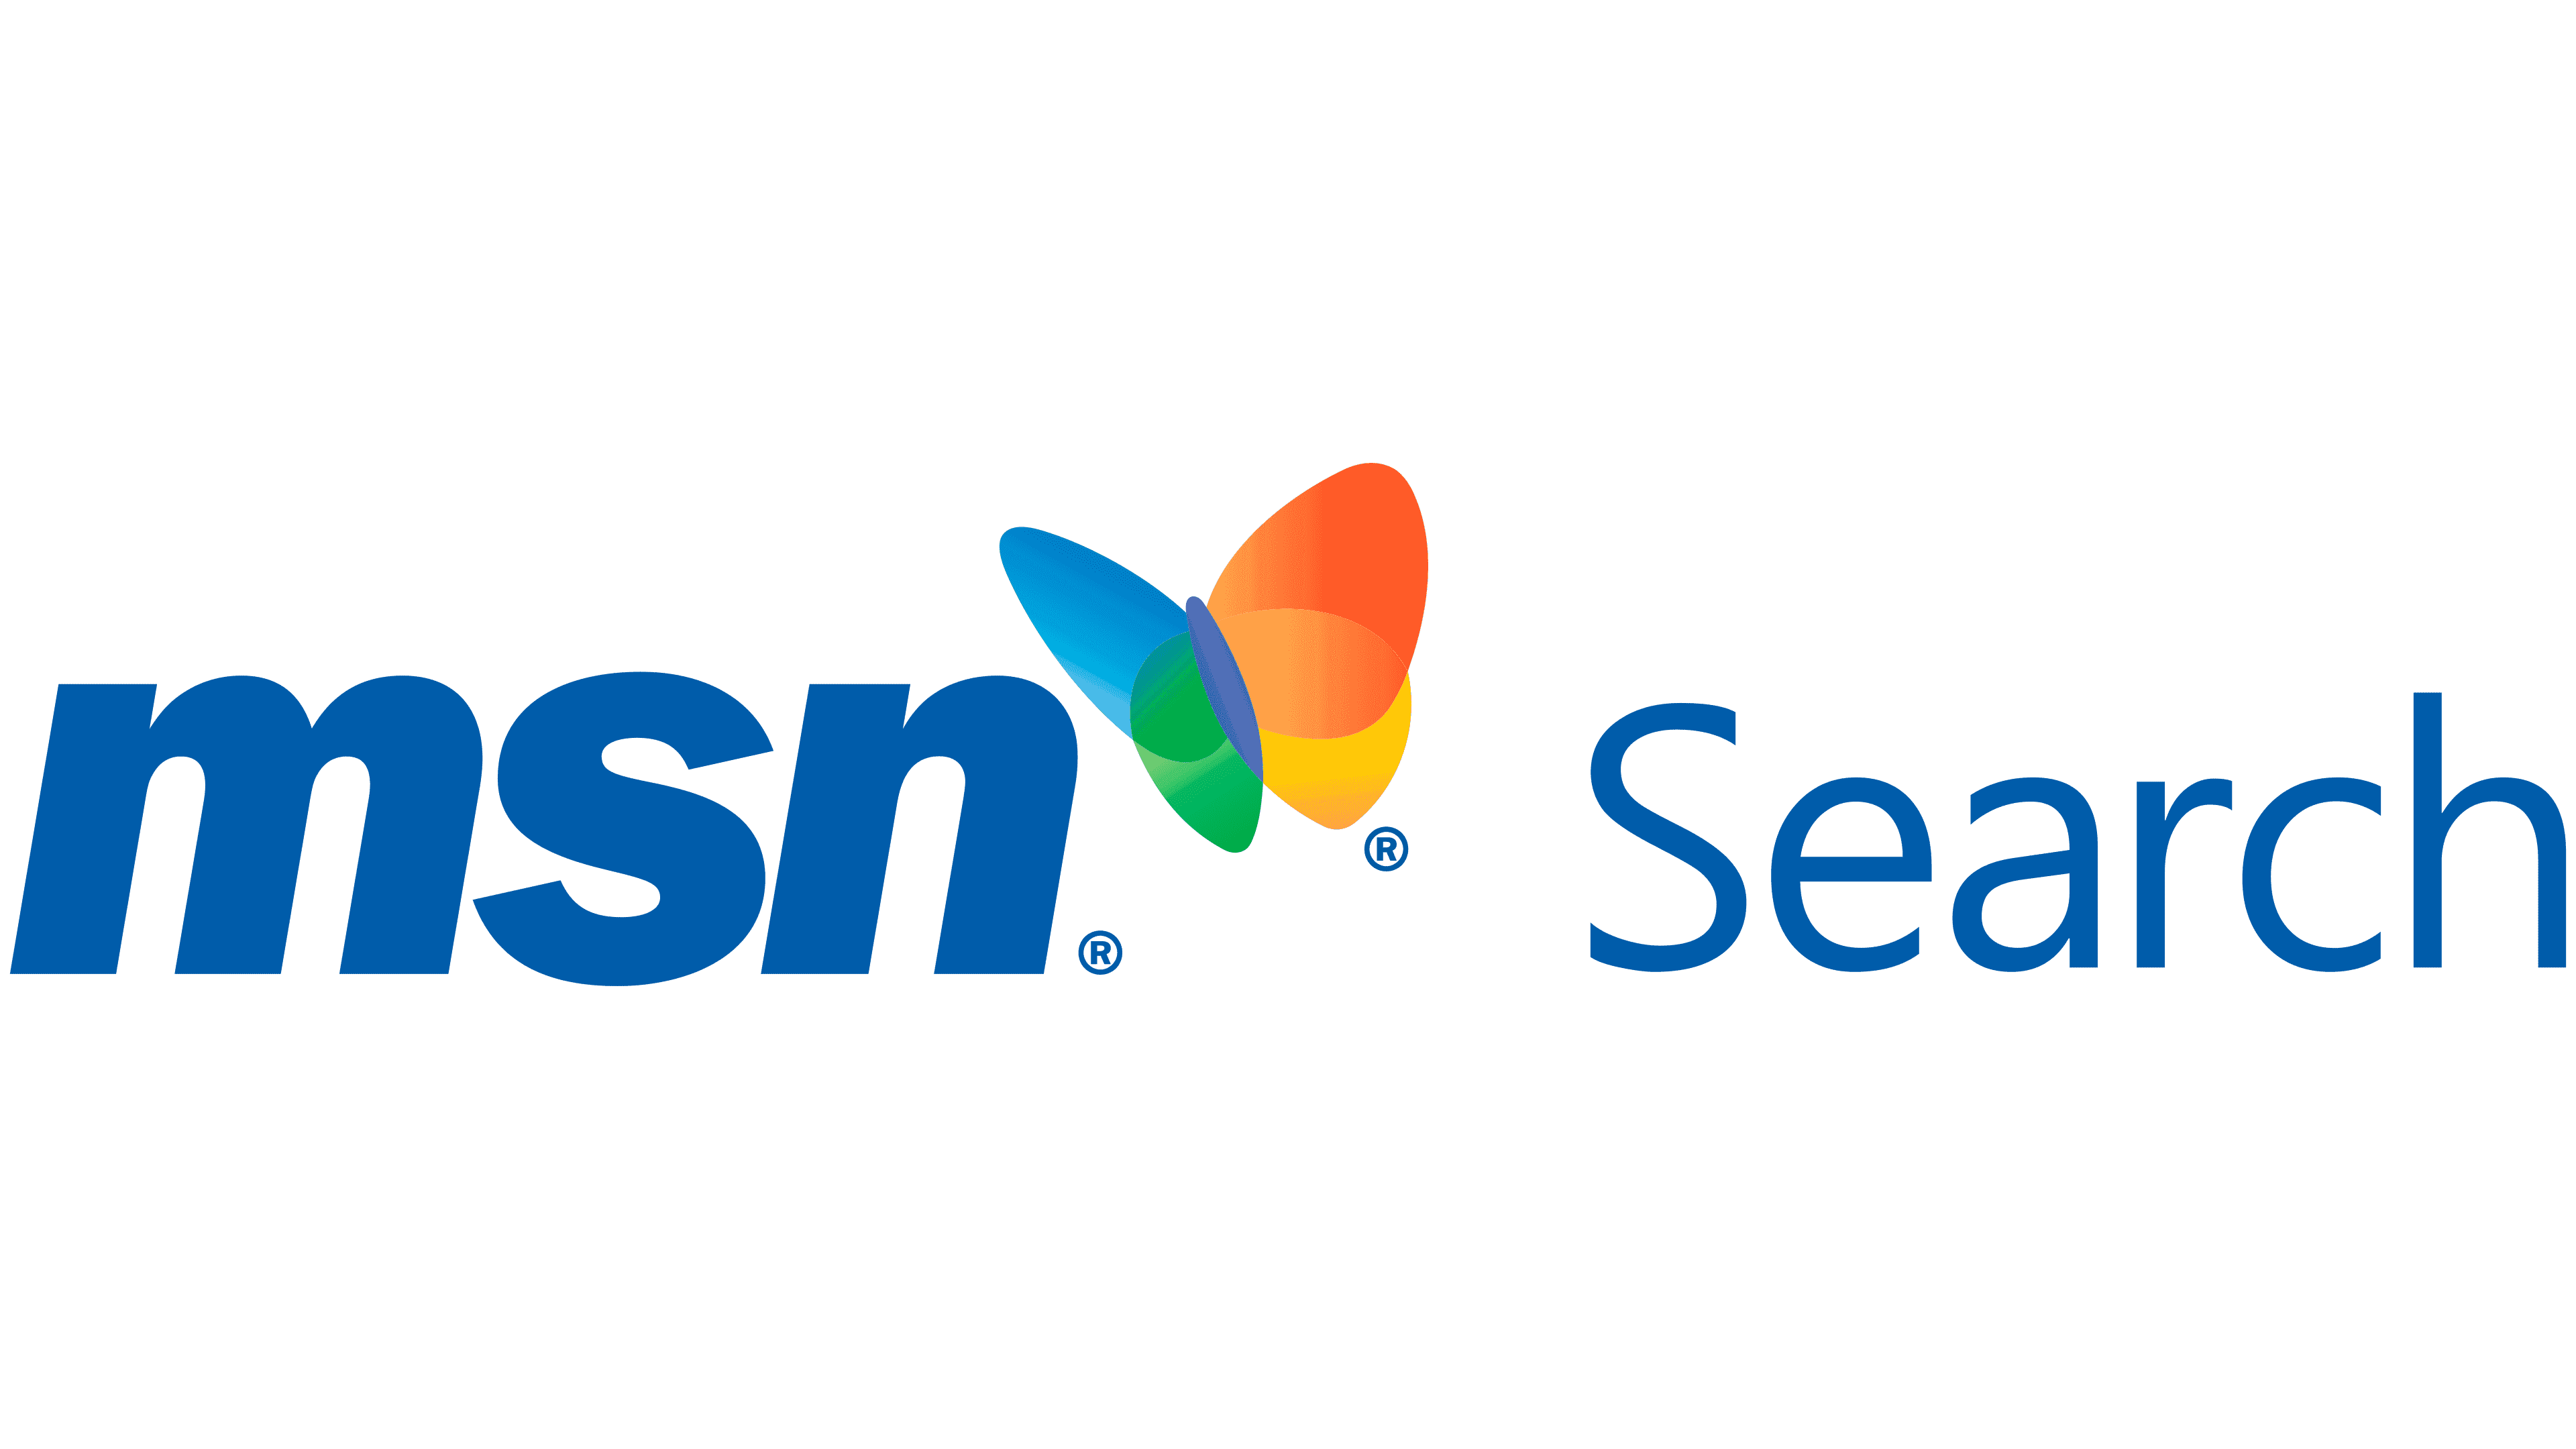 msn opens on startup